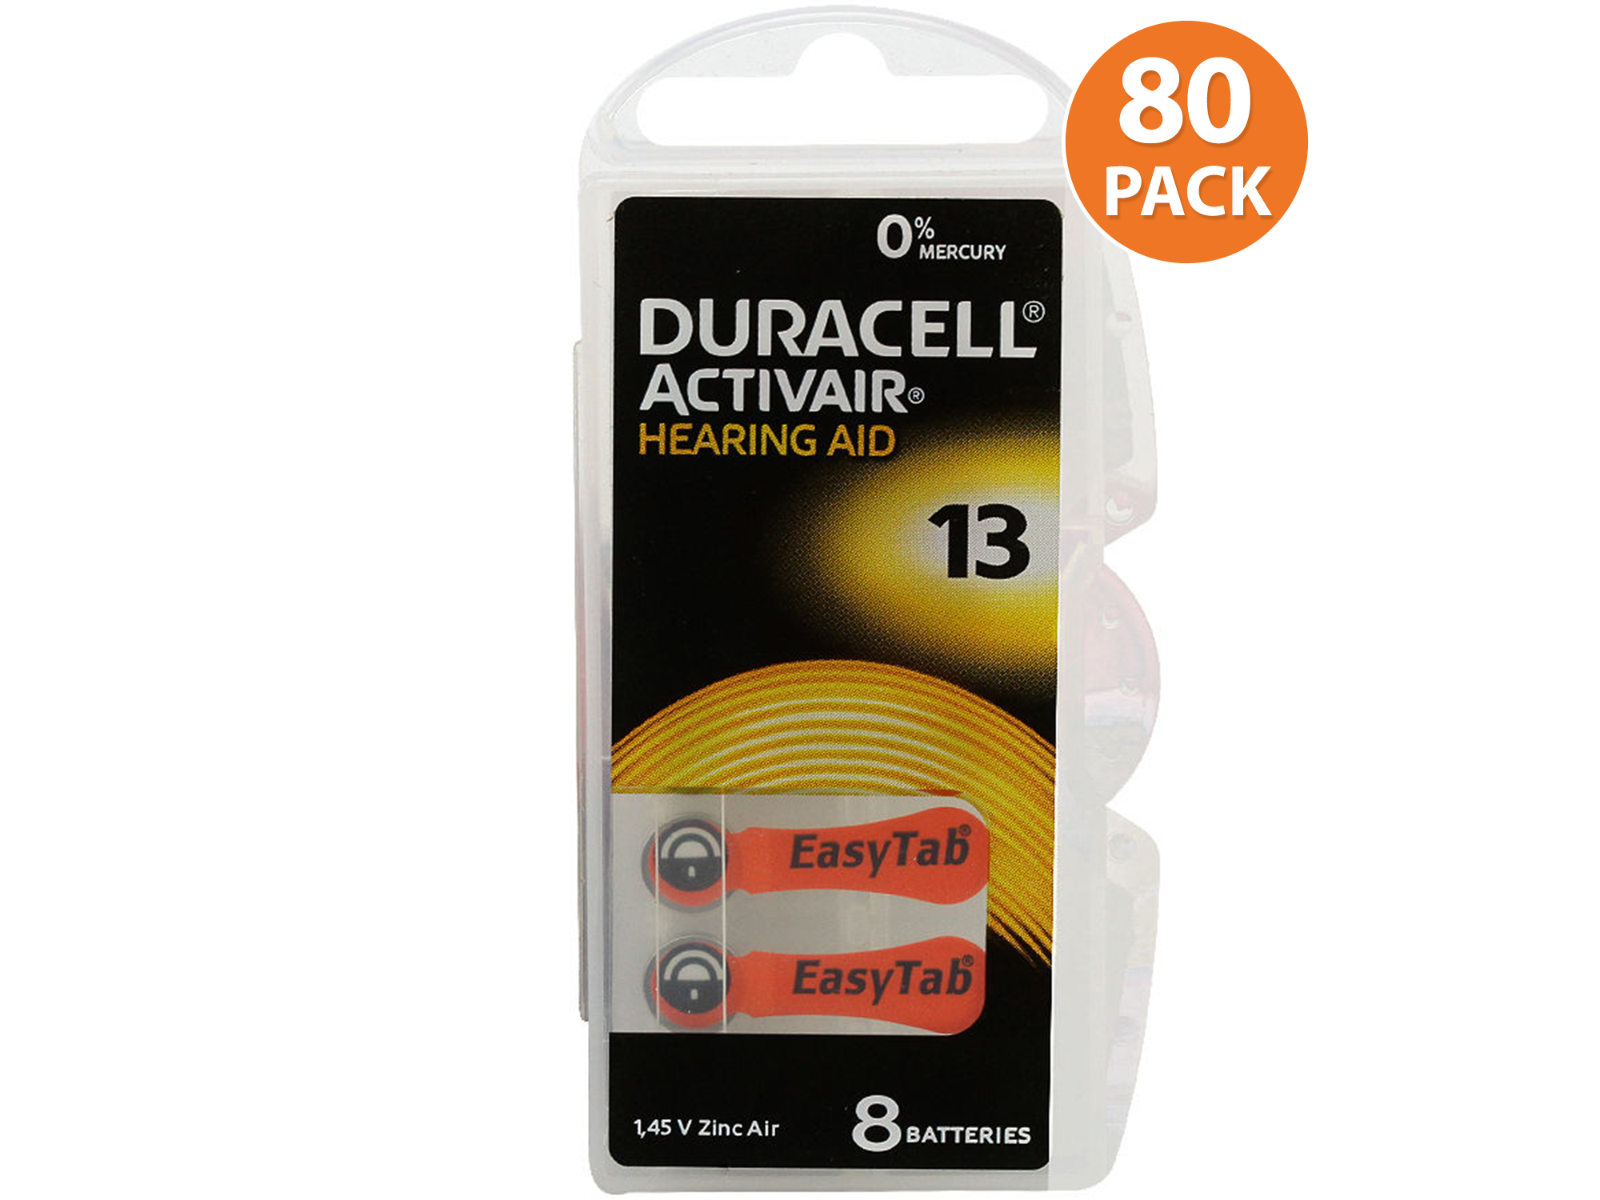 10x6er Blister Orange 60x Duracell Activair Hörgerätebatterien 13 Hearing Aid 